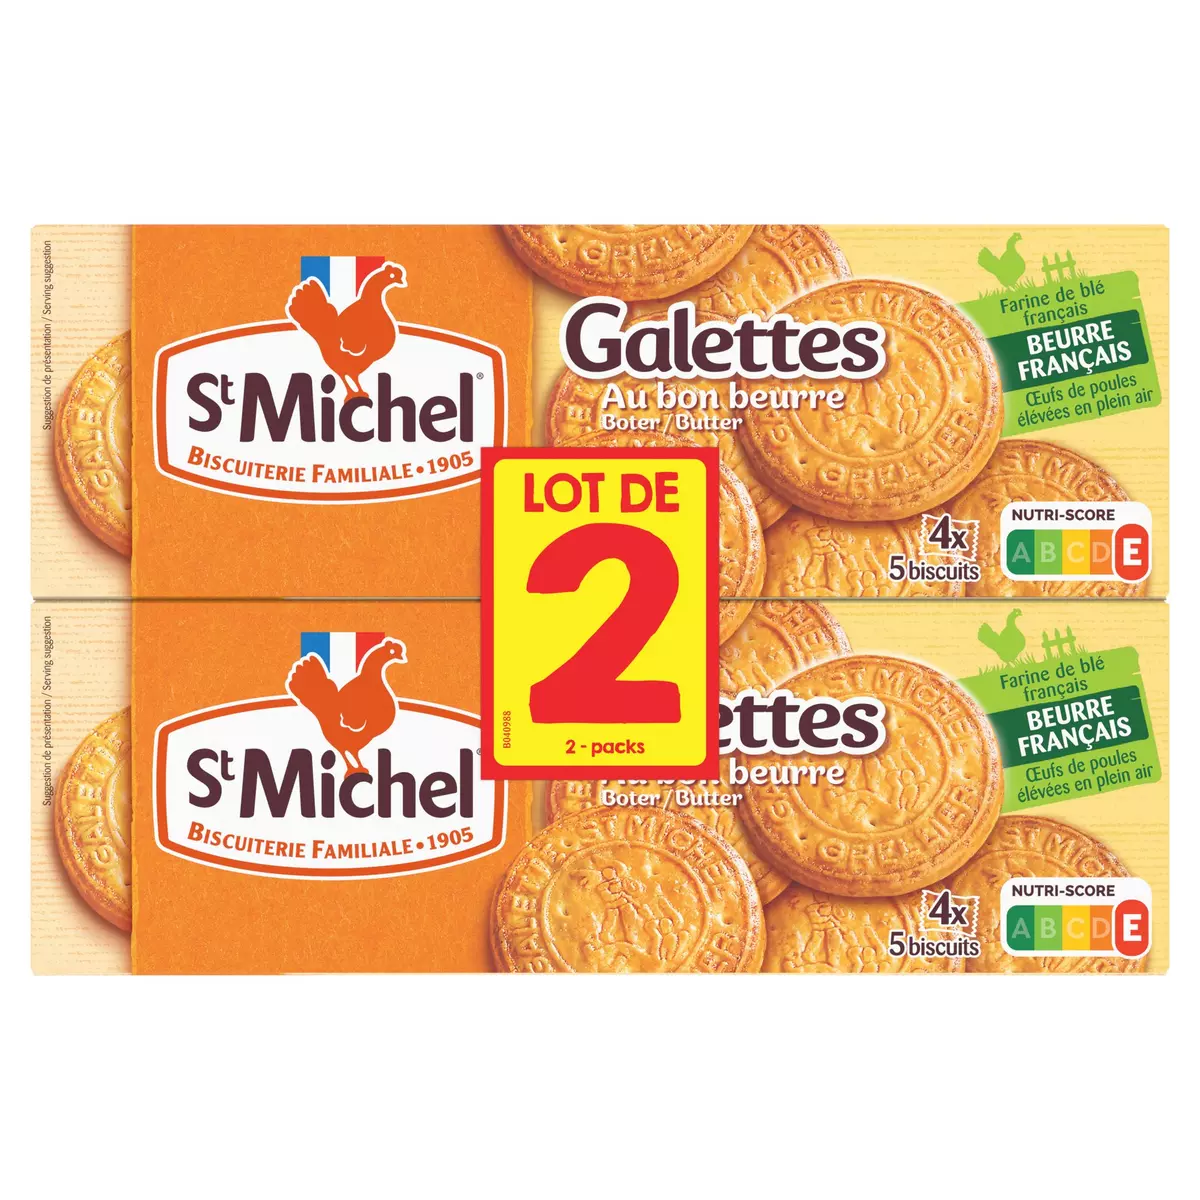 ST MICHEL Galettes pur beurre, sachets fraîcheur Lot de 2 2x130g